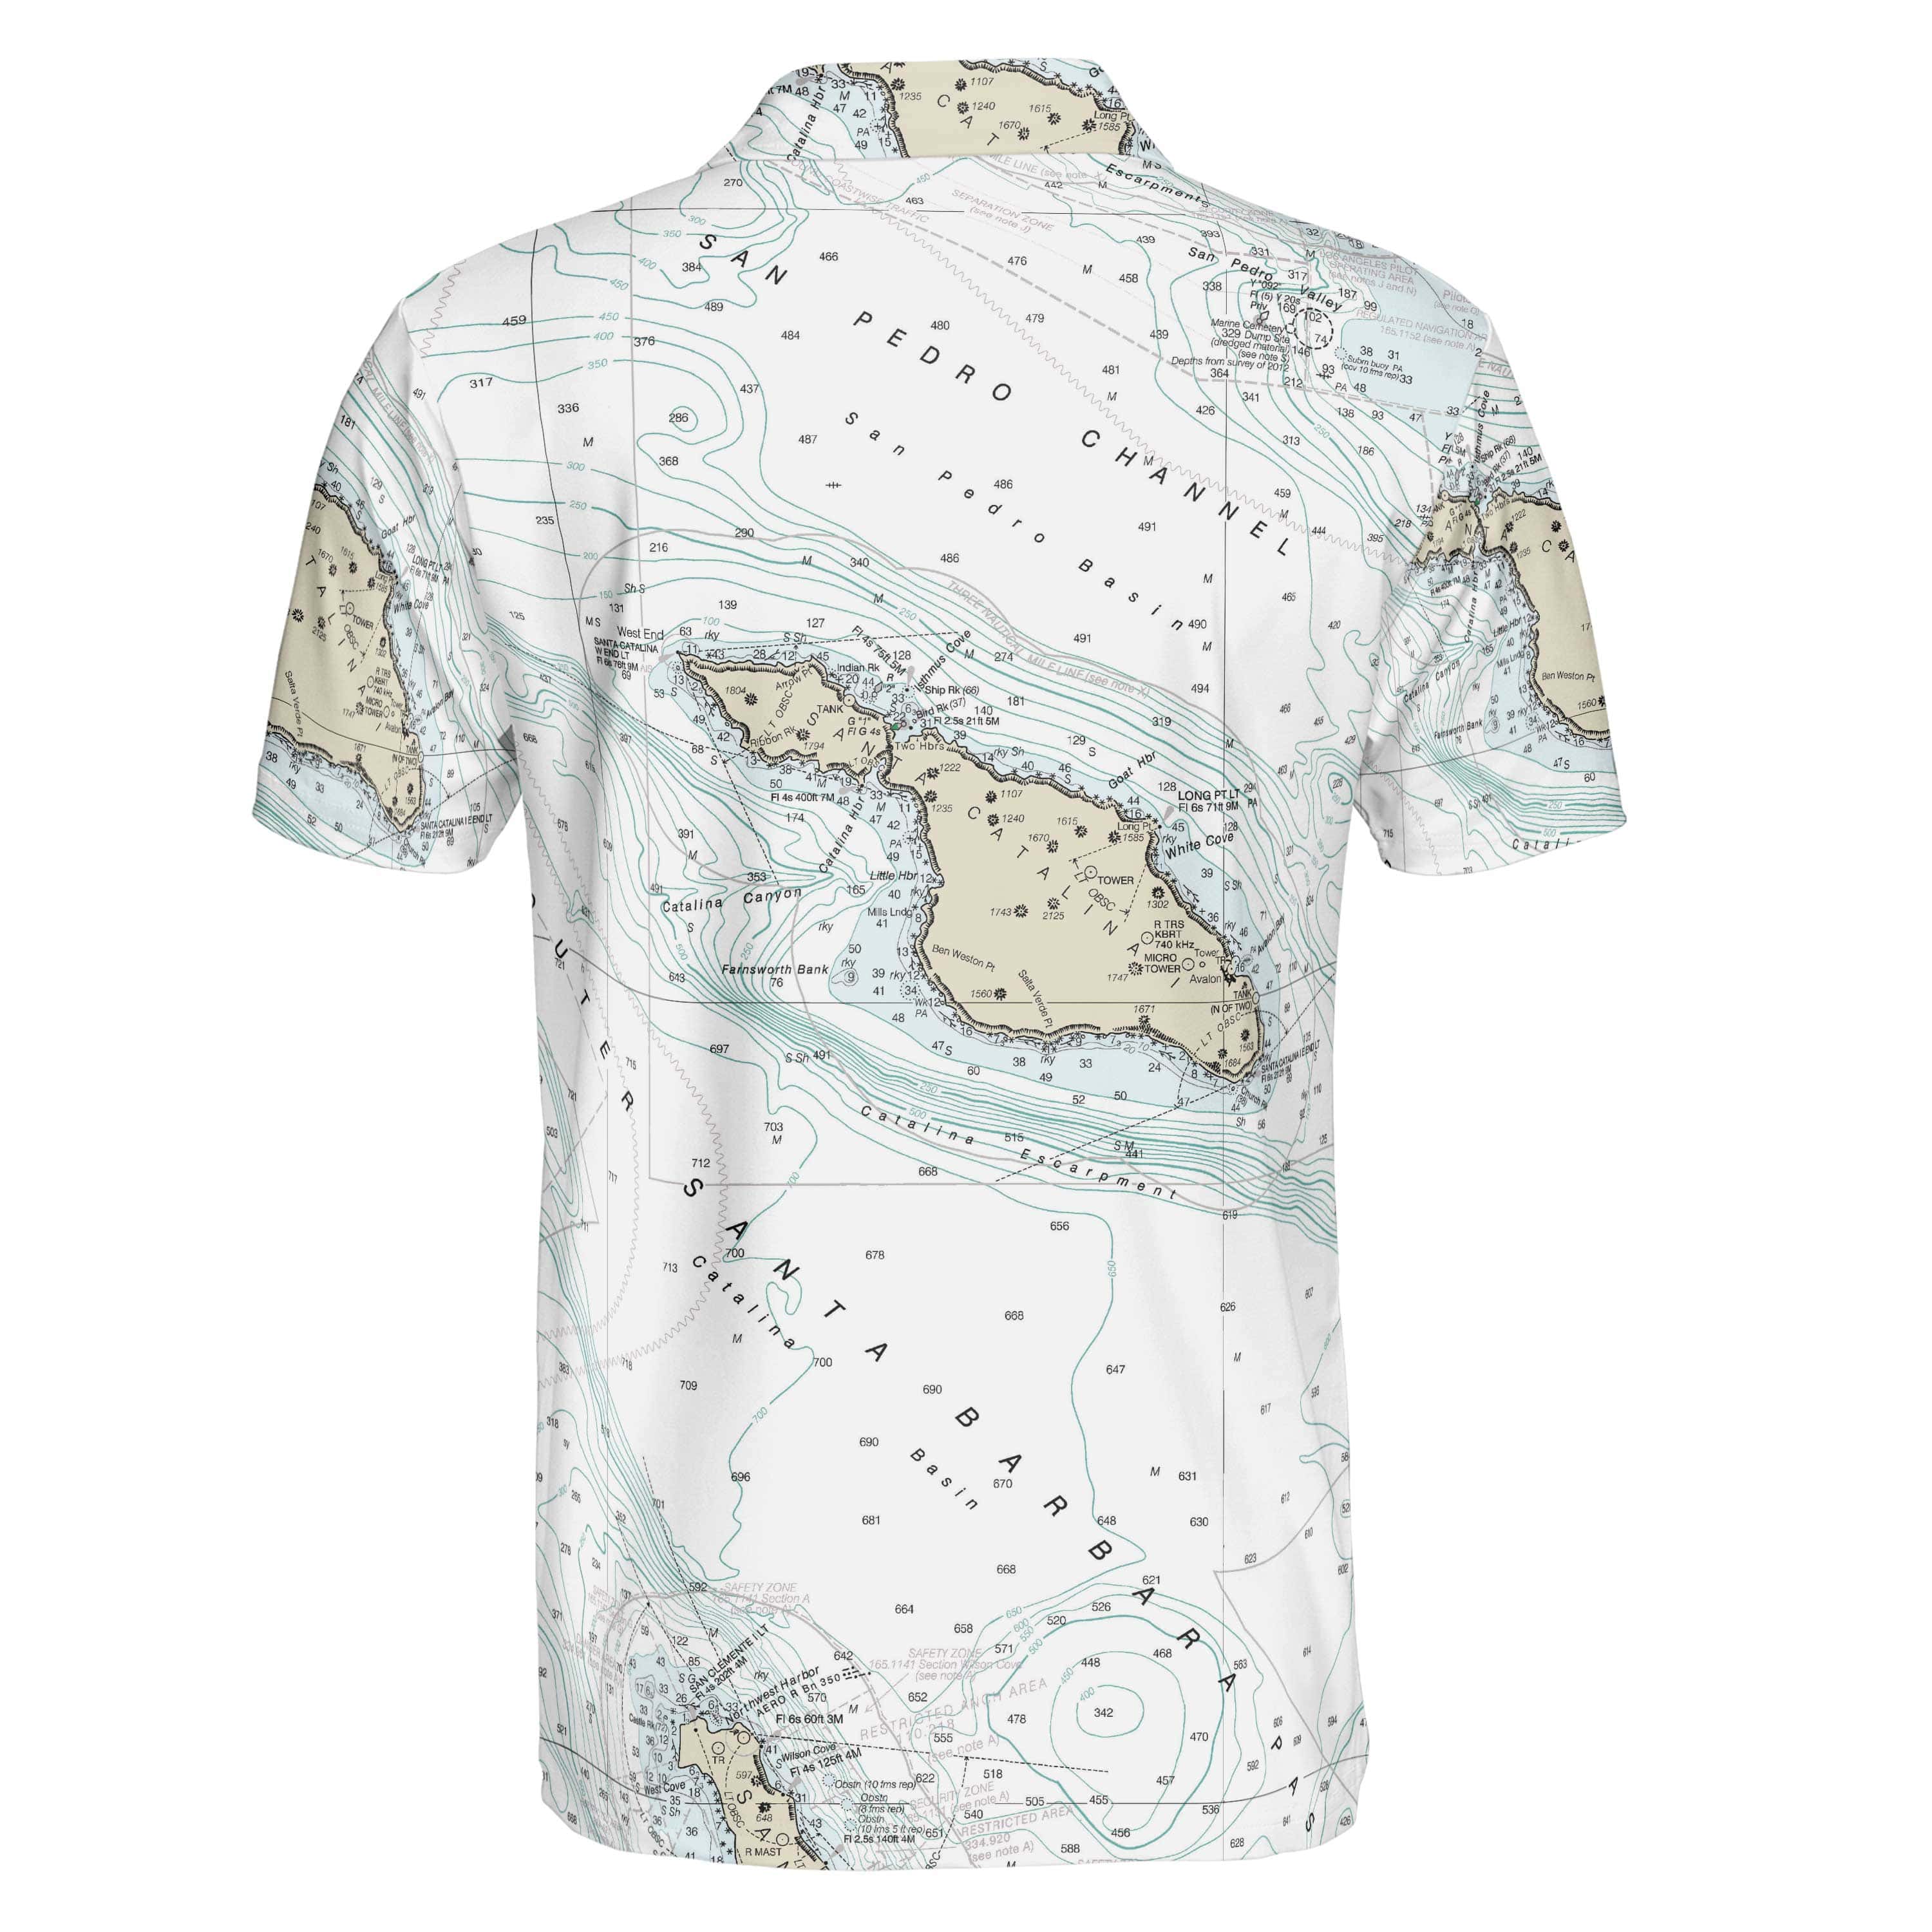 The Santa Catalina Island Polo Shirt